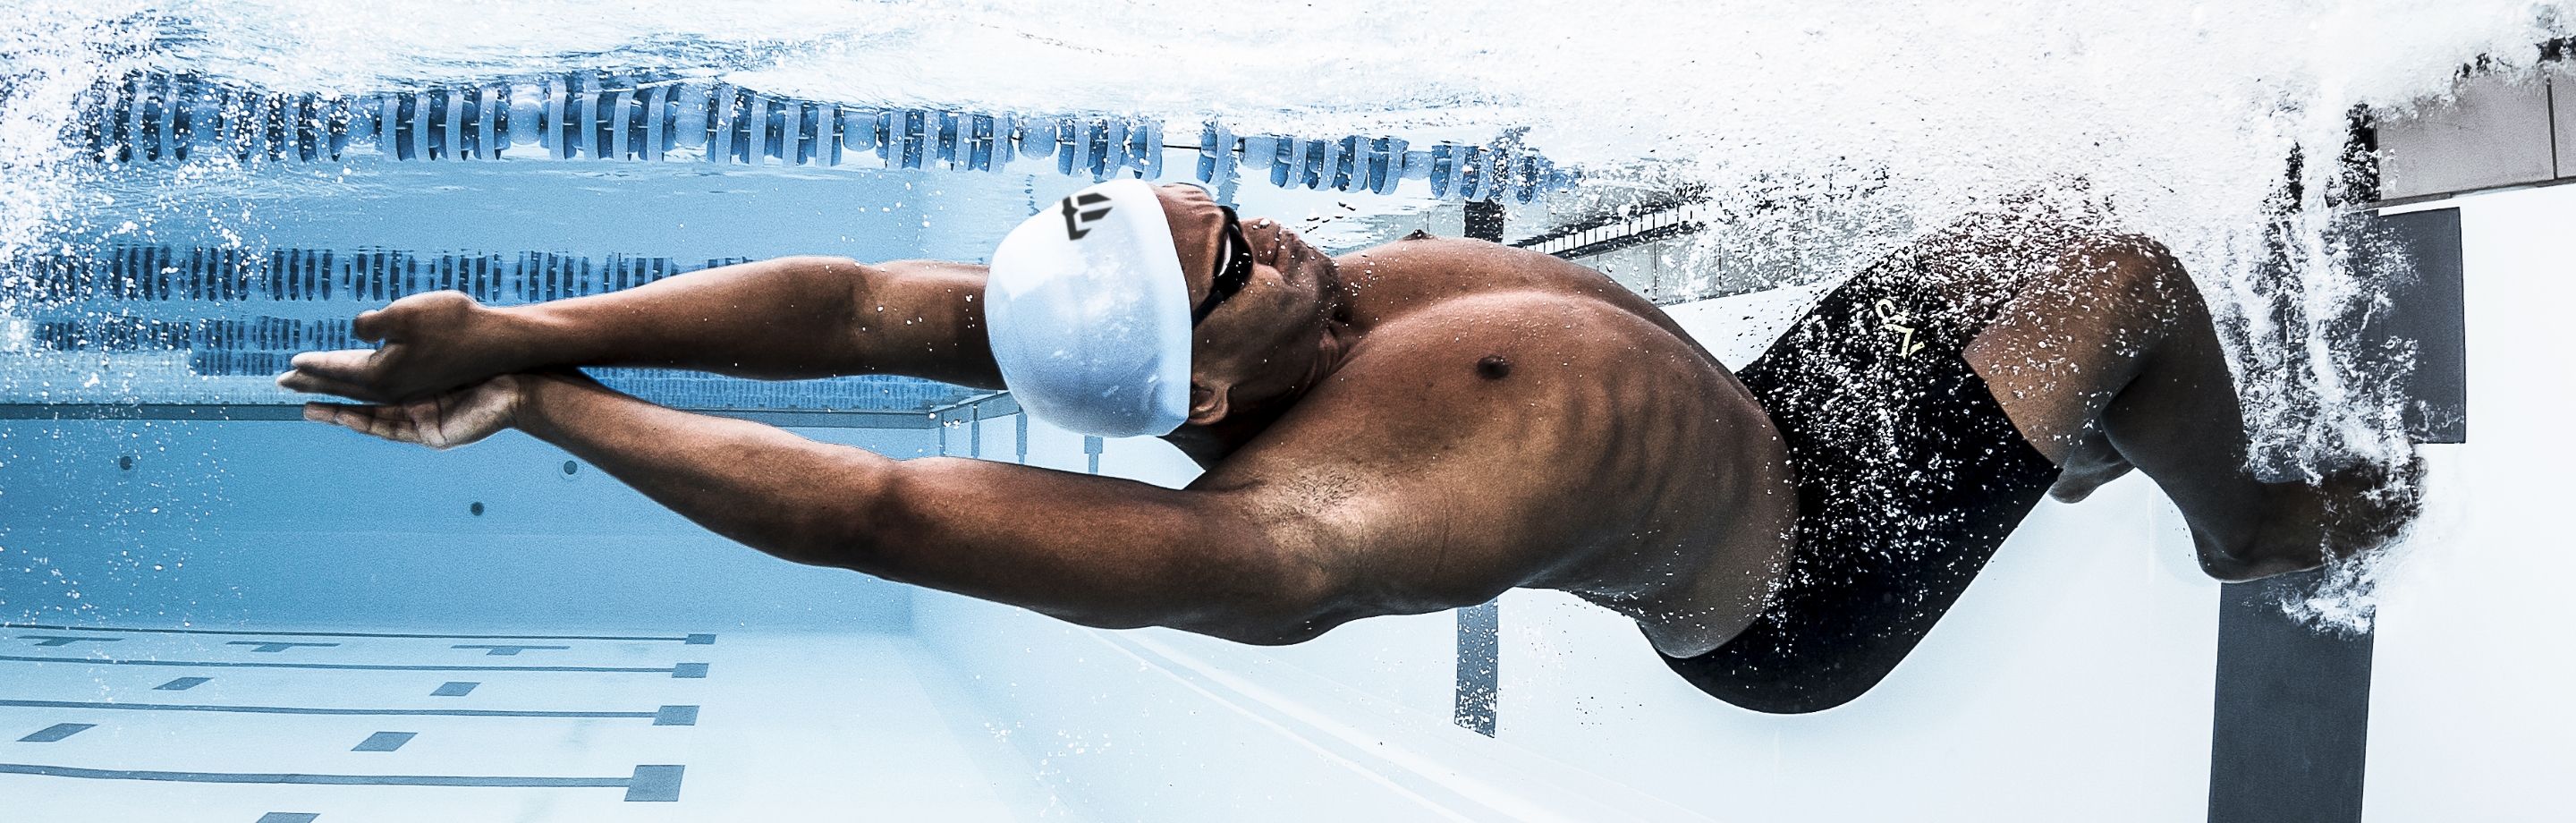 Phelps - Swimwear and Equipment from Legendary Hands